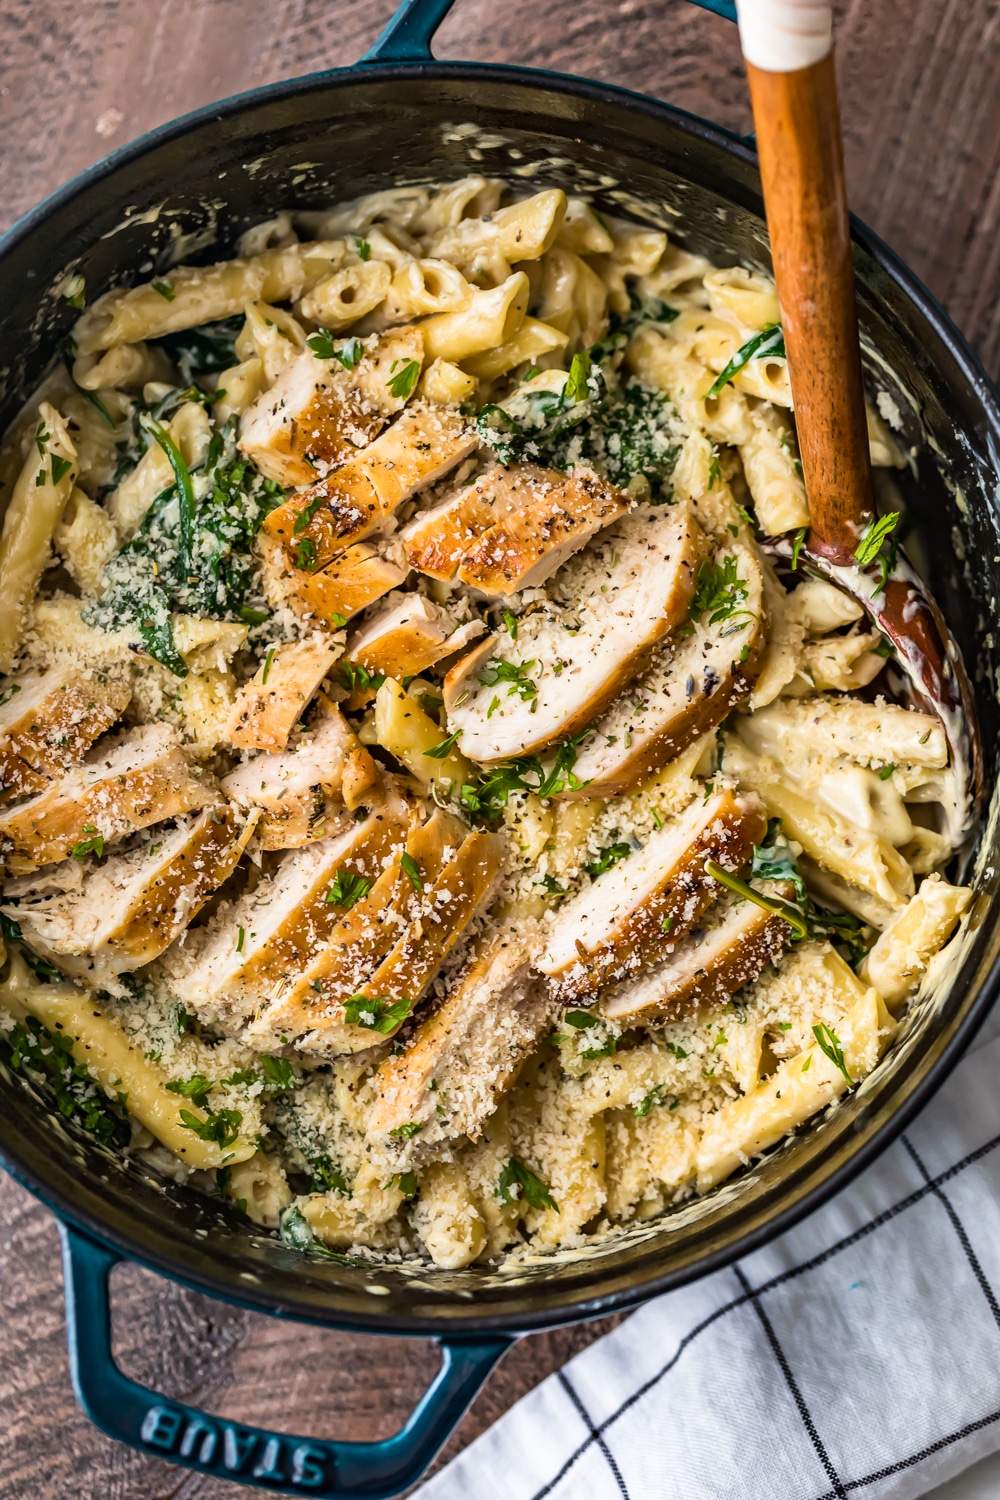 Receta de pasta florentina con pollo + ¡Pasta fácil!